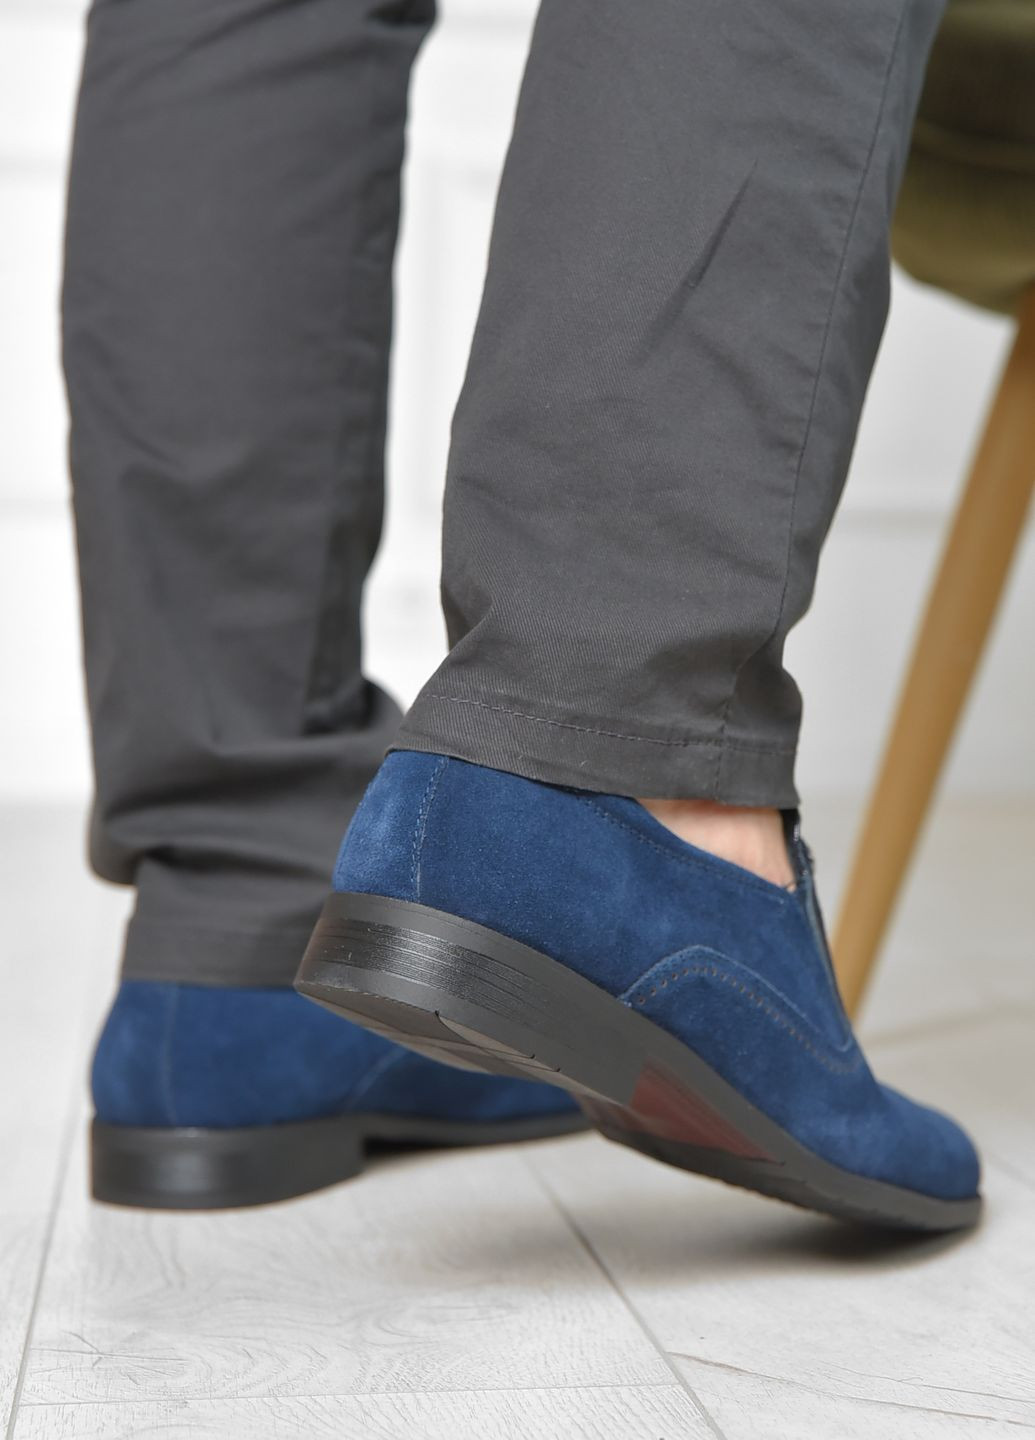 Синие классические туфли мужские синего цвета Let's Shop без шнурков